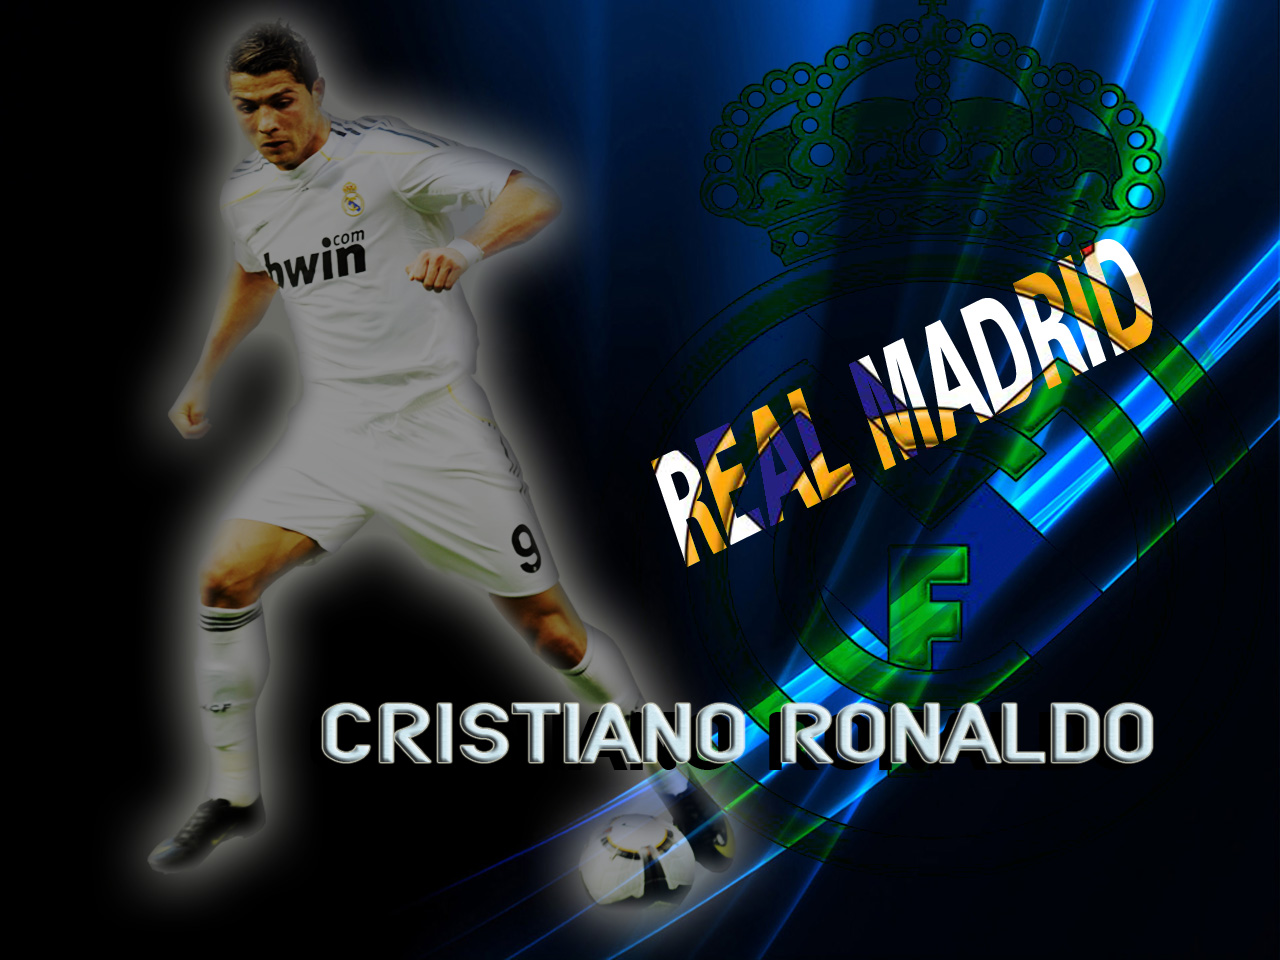 http://3.bp.blogspot.com/-mWEGiwYTa10/Tamv3pSsY4I/AAAAAAAAAig/fpeQehQGDBc/s1600/Cristiano-Ronaldo-Real-Madrid-02.jpg